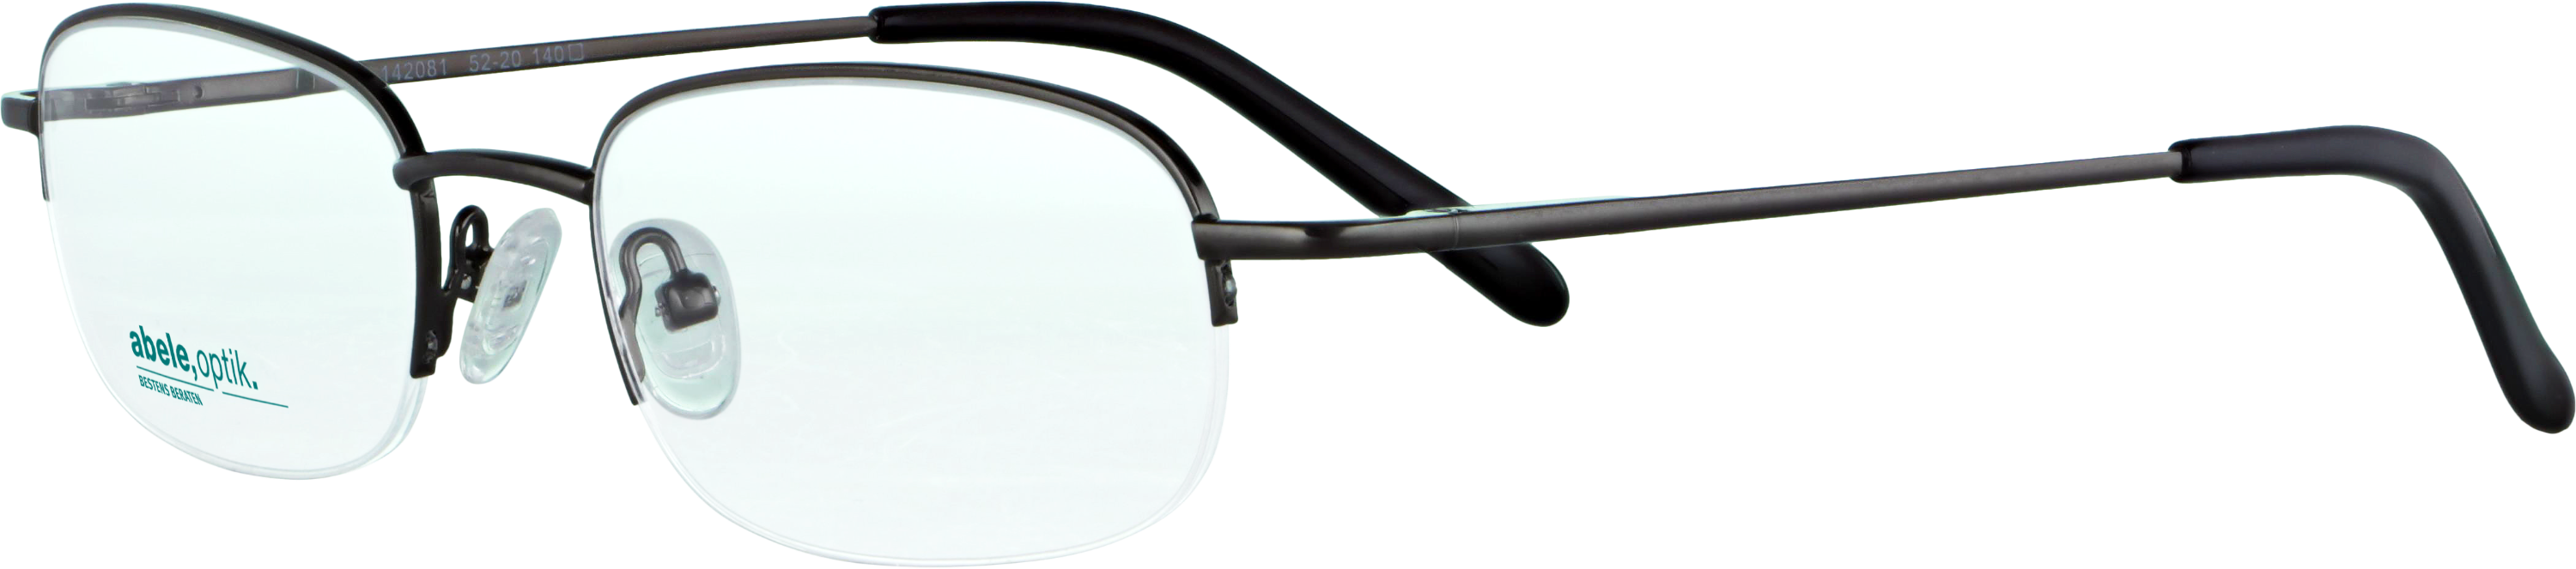 Das Bild zeigt die Korrektionsbrille 142081 von der Marke Abele Optik in gun.